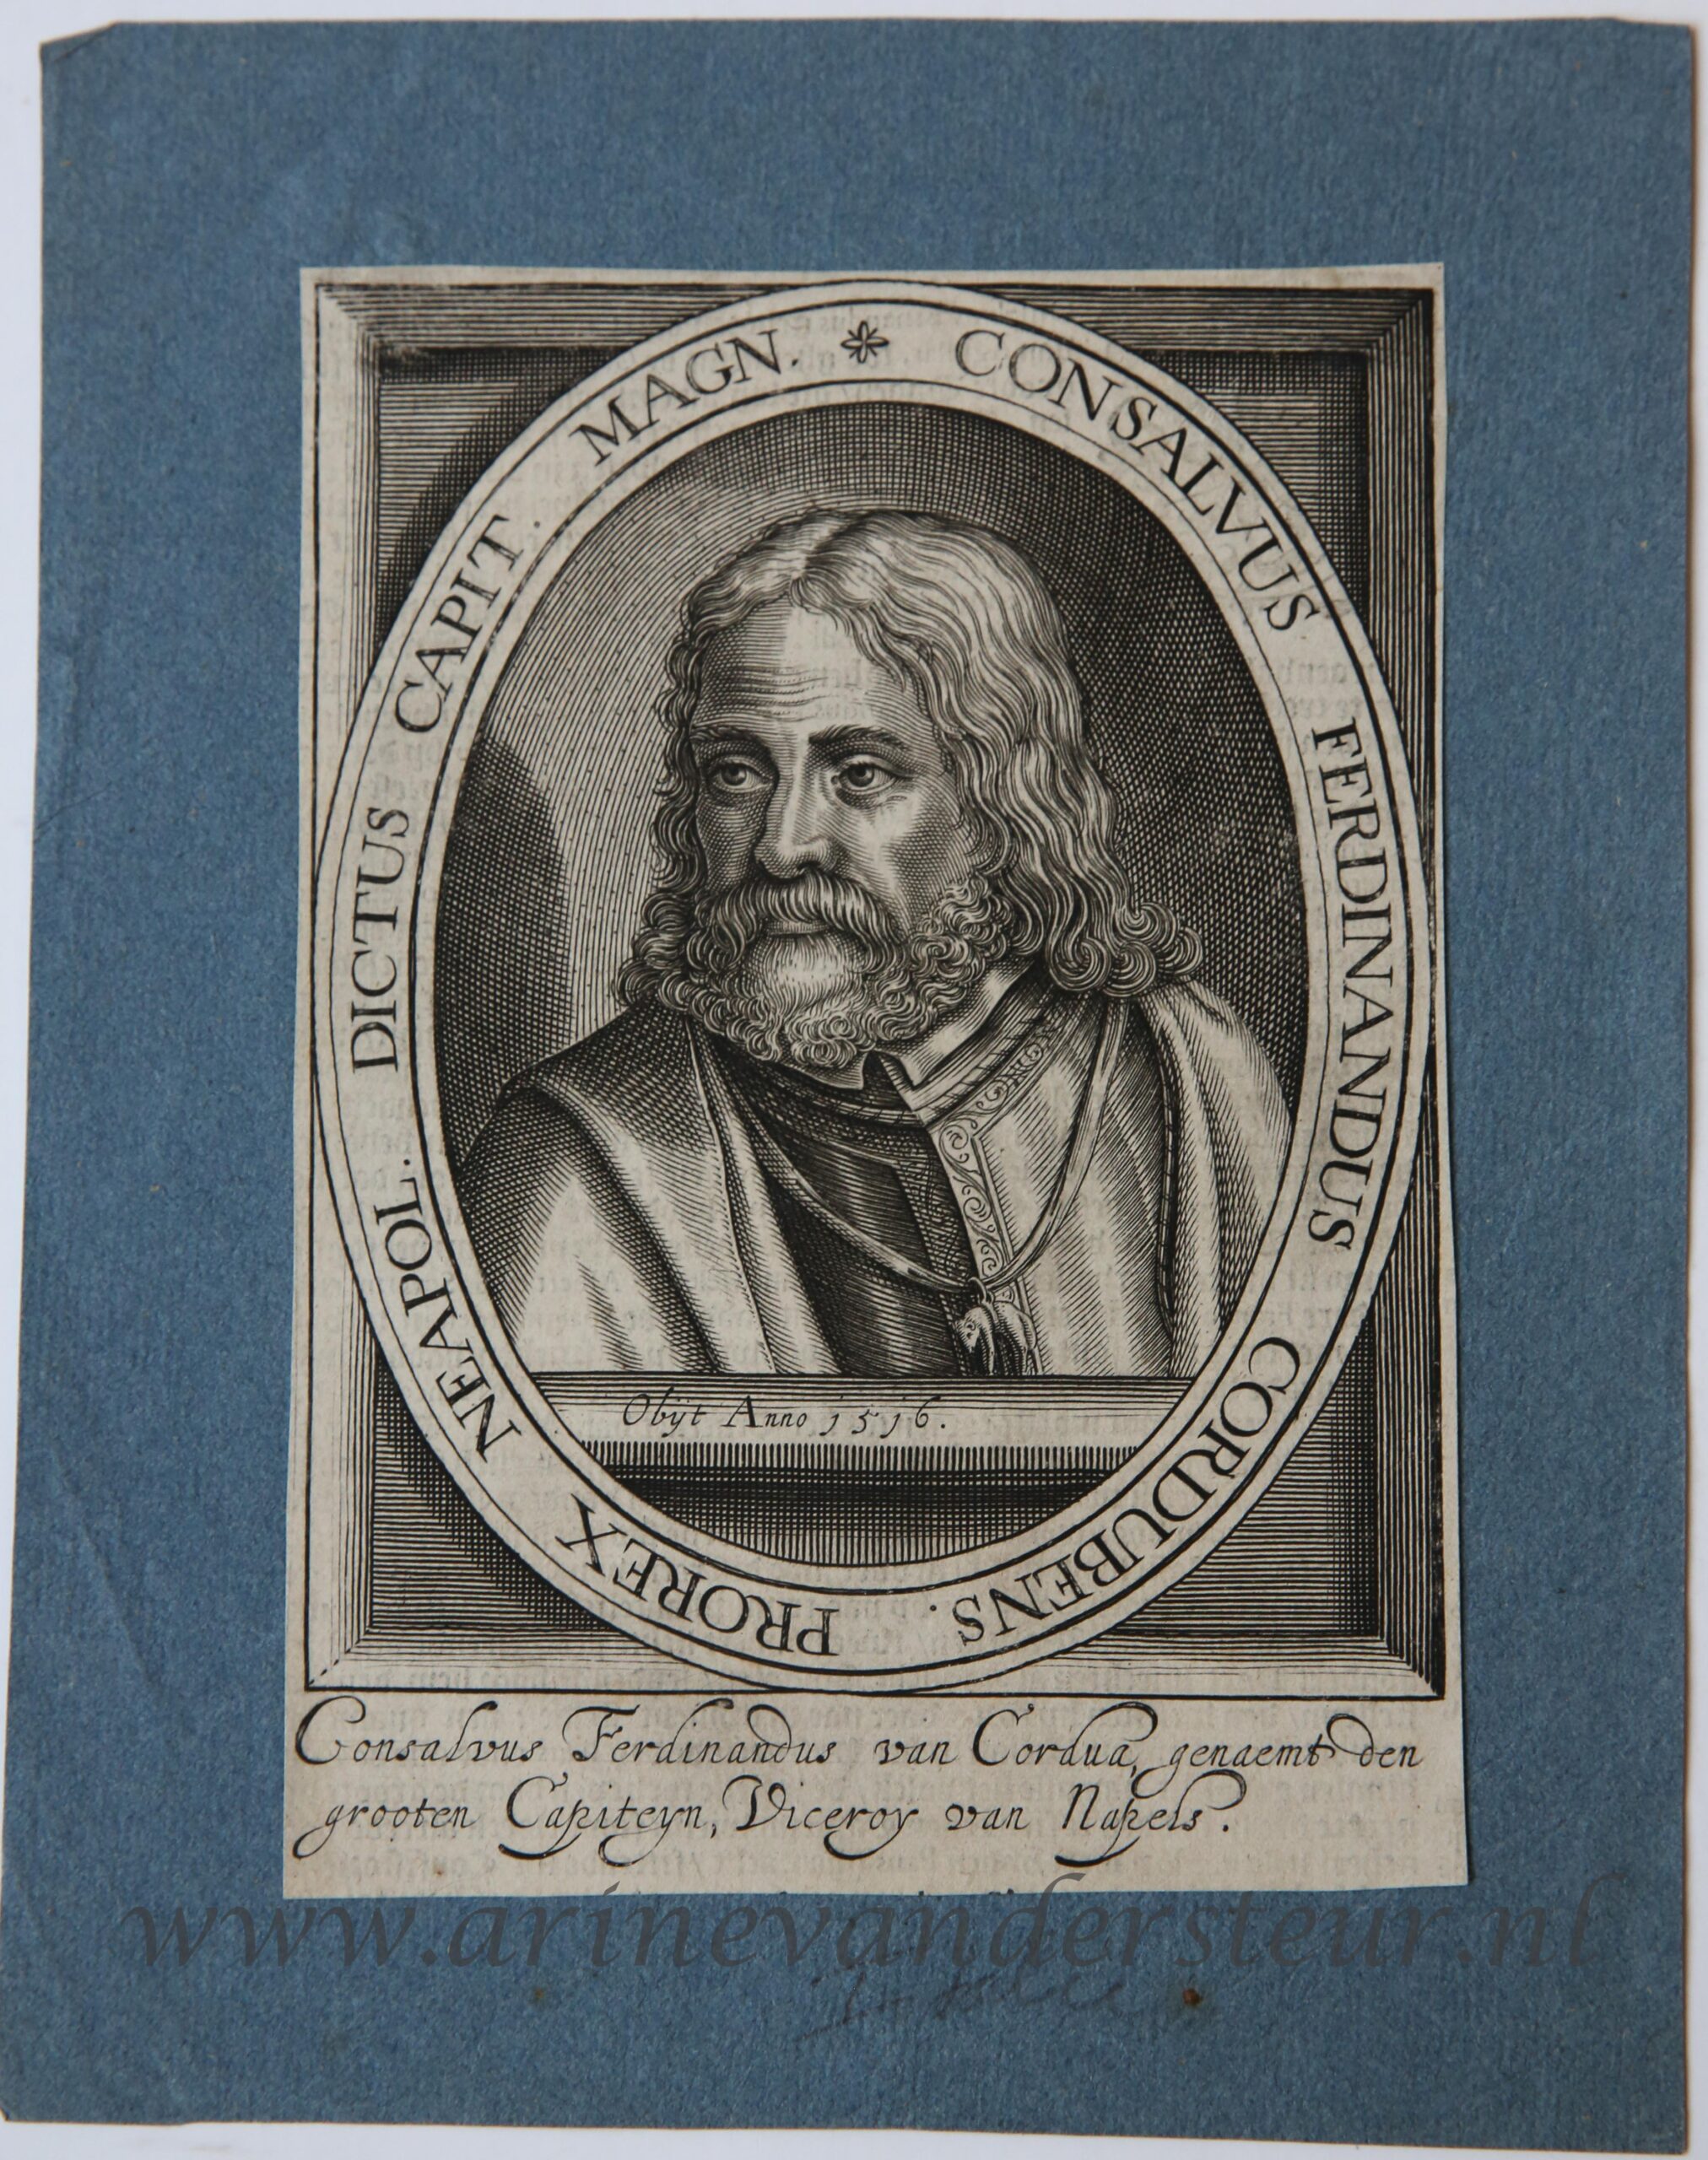 [Antique engraving, gravure] Anonymous. CONSALVUS FERDINANDUS CORDUBENS, published 1600-1650.